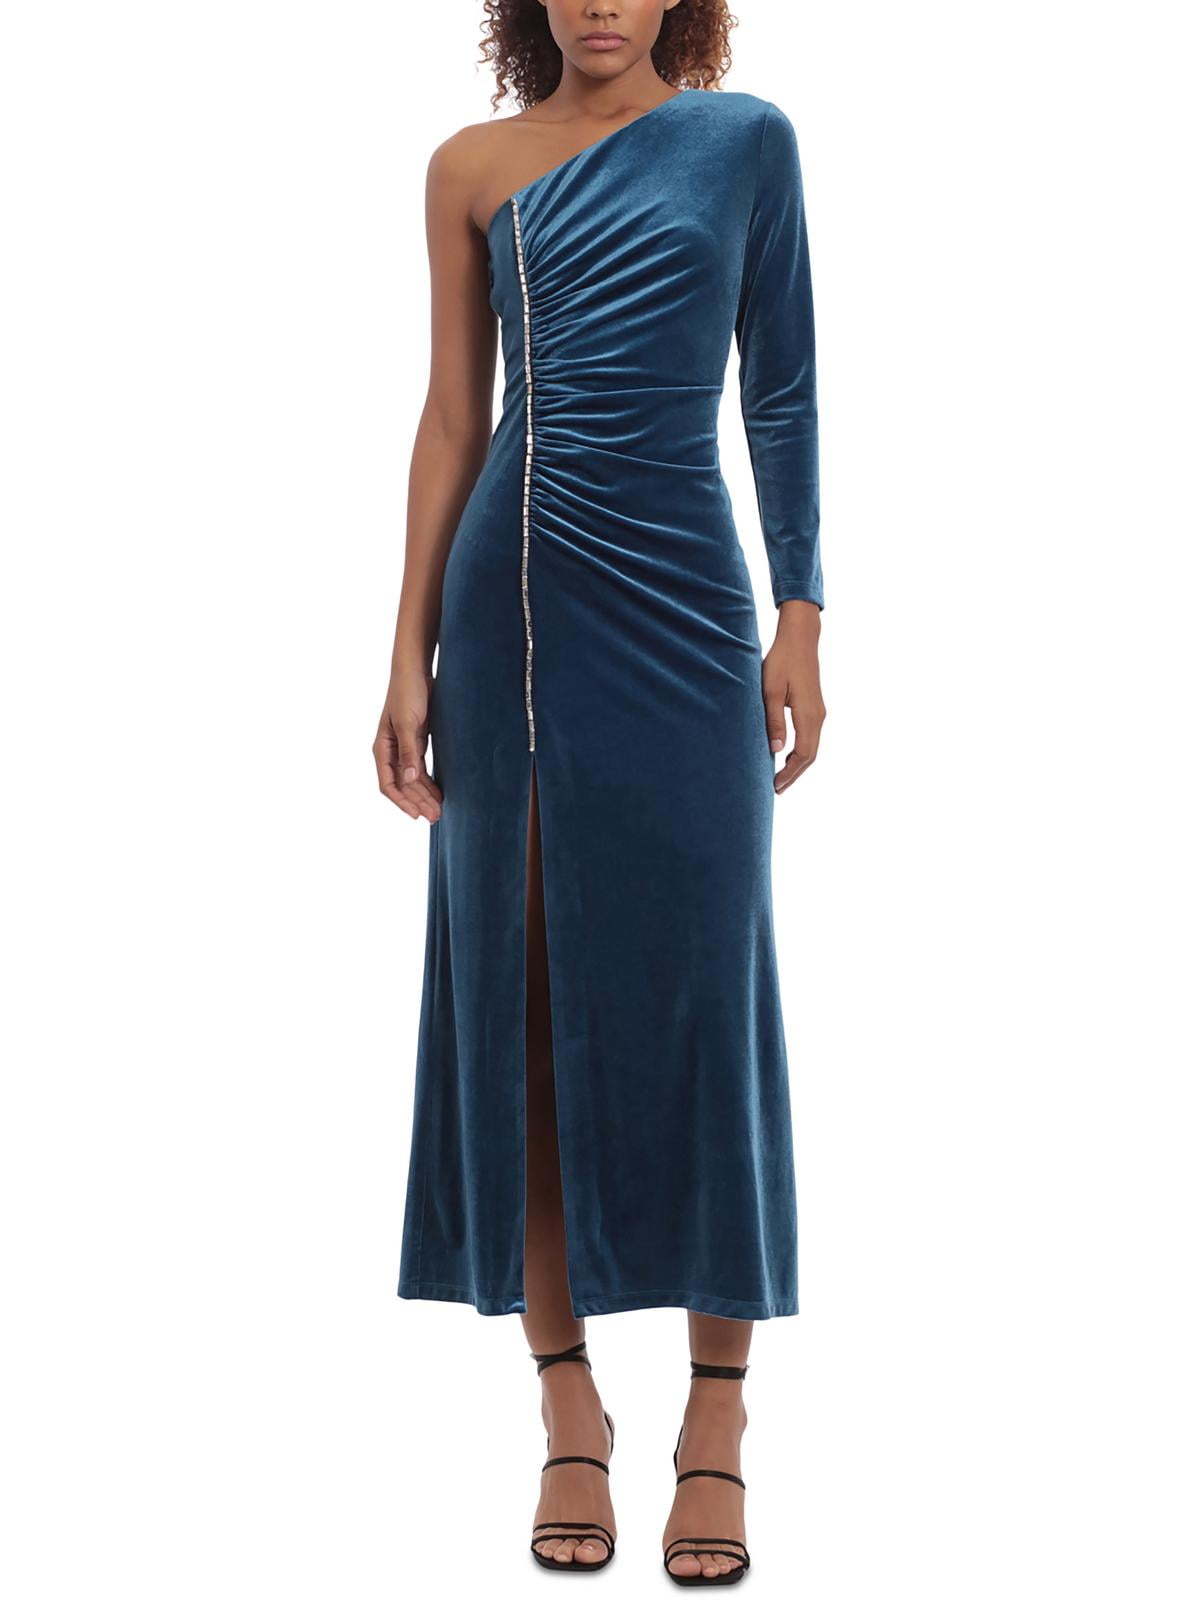 Donna Morgan Womens Velvet Mid-Calf Midi Dress - Walmart.com